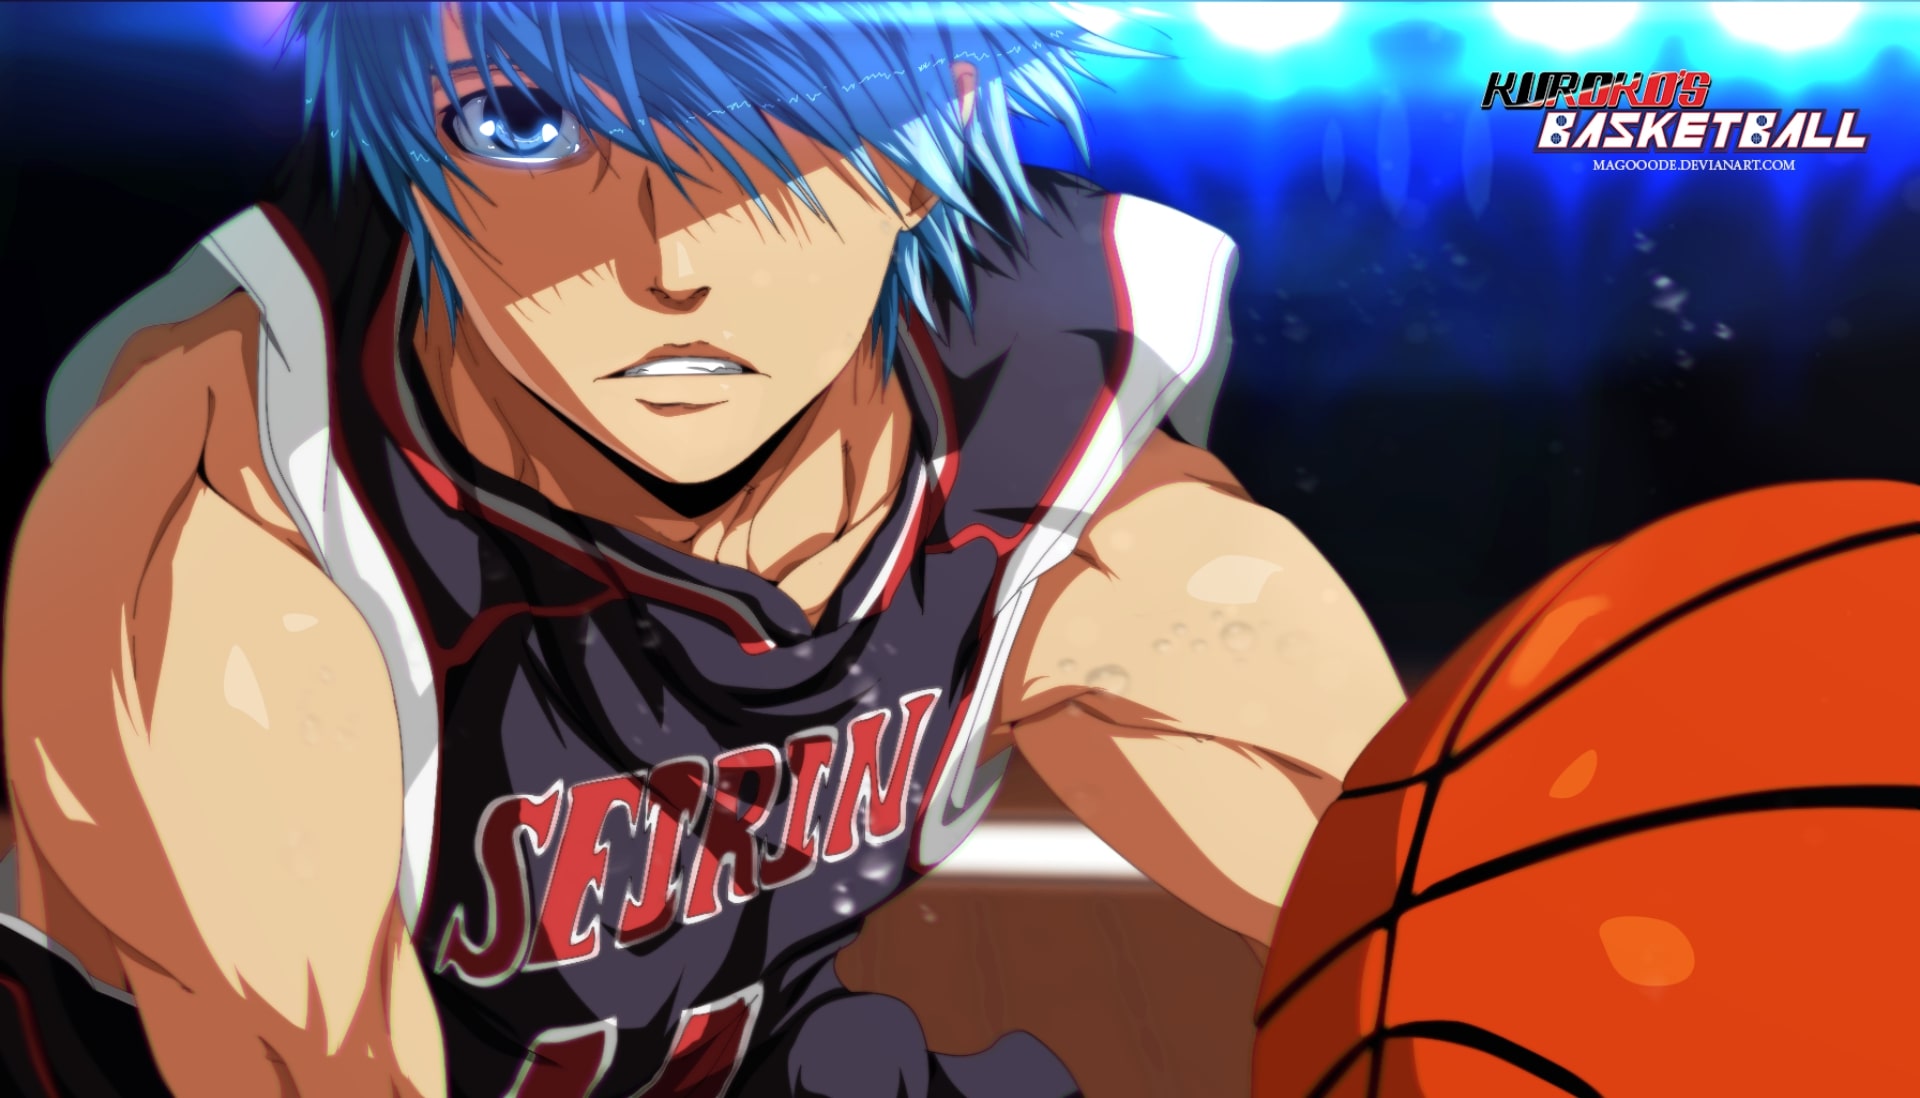 7. "Kuroko's Basketball" manga series - wide 8